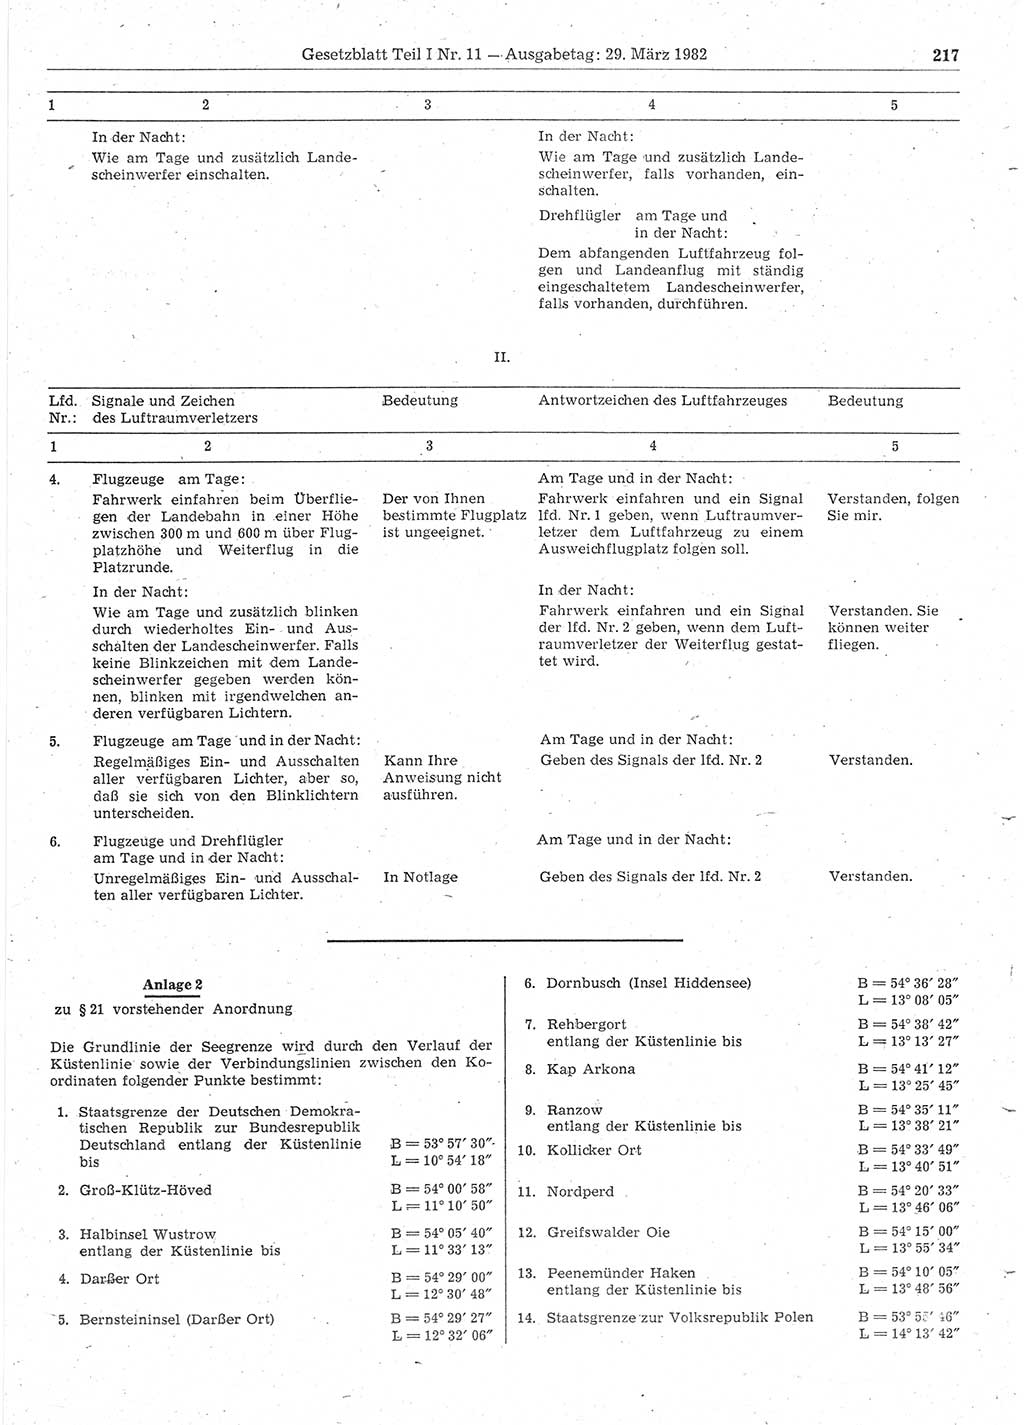 Gesetzblatt (GBl.) der Deutschen Demokratischen Republik (DDR) Teil Ⅰ 1982, Seite 217 (GBl. DDR Ⅰ 1982, S. 217)